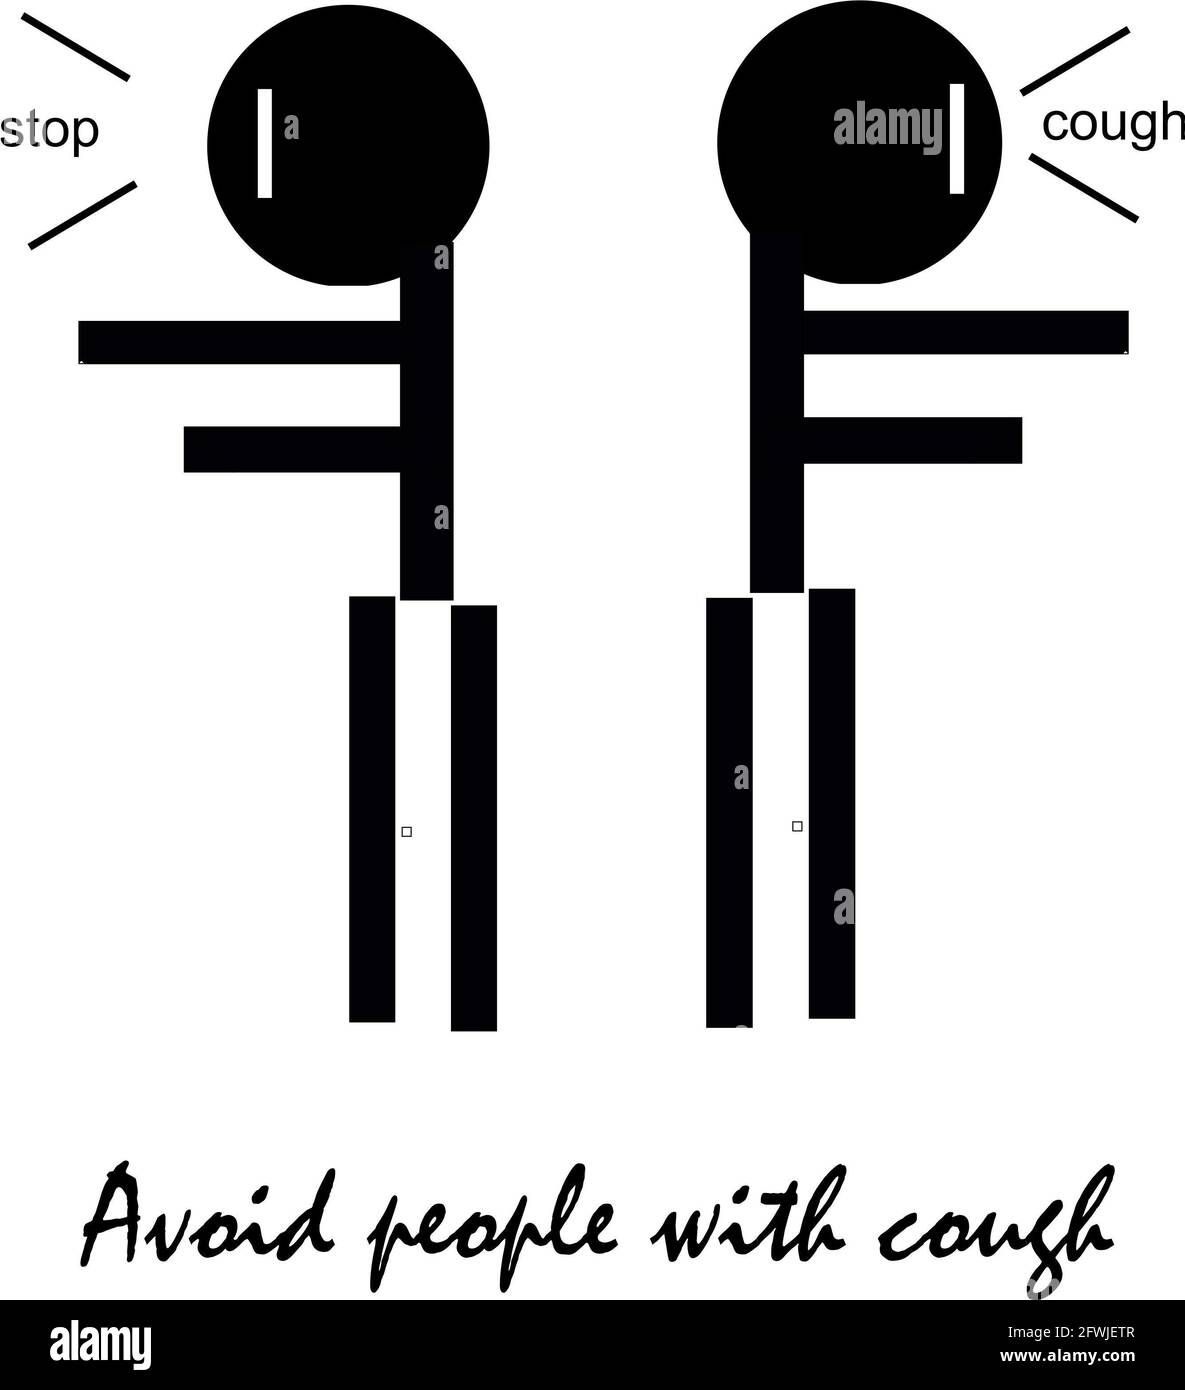 Sign and symptoms of Coronavirus Stock Photo